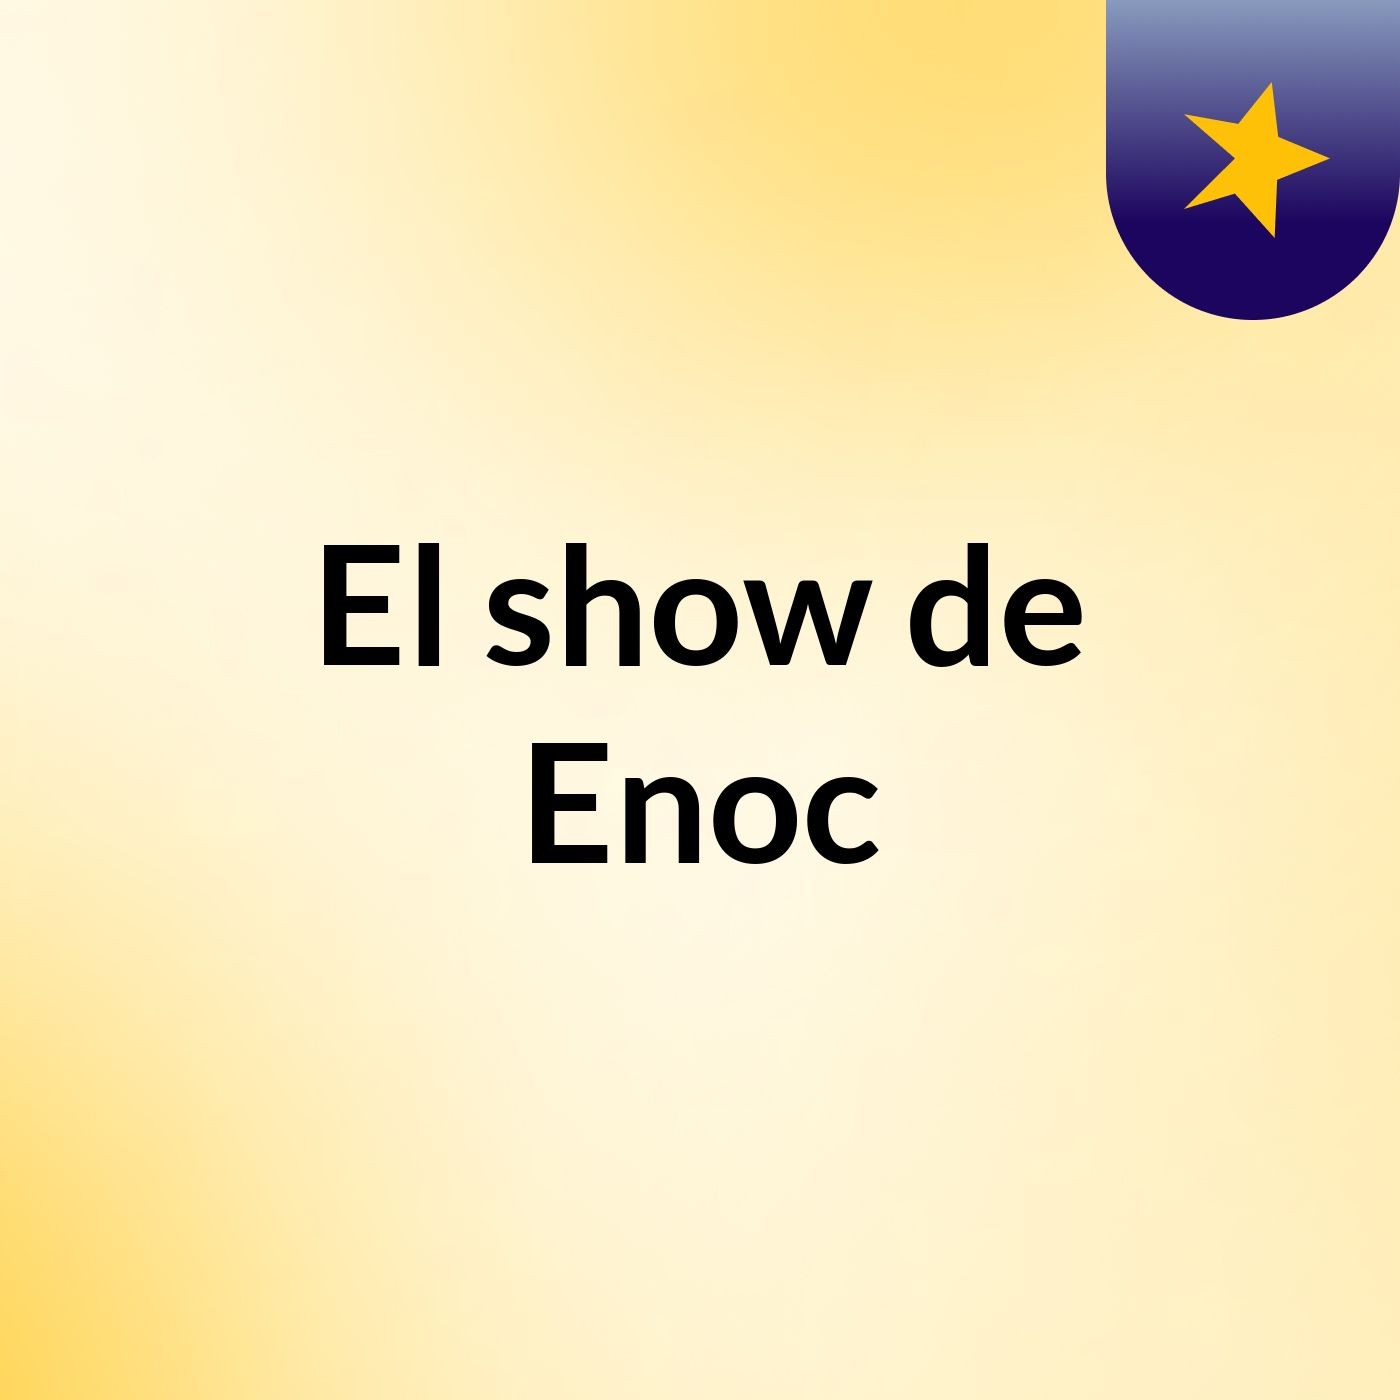 El show de Enoc